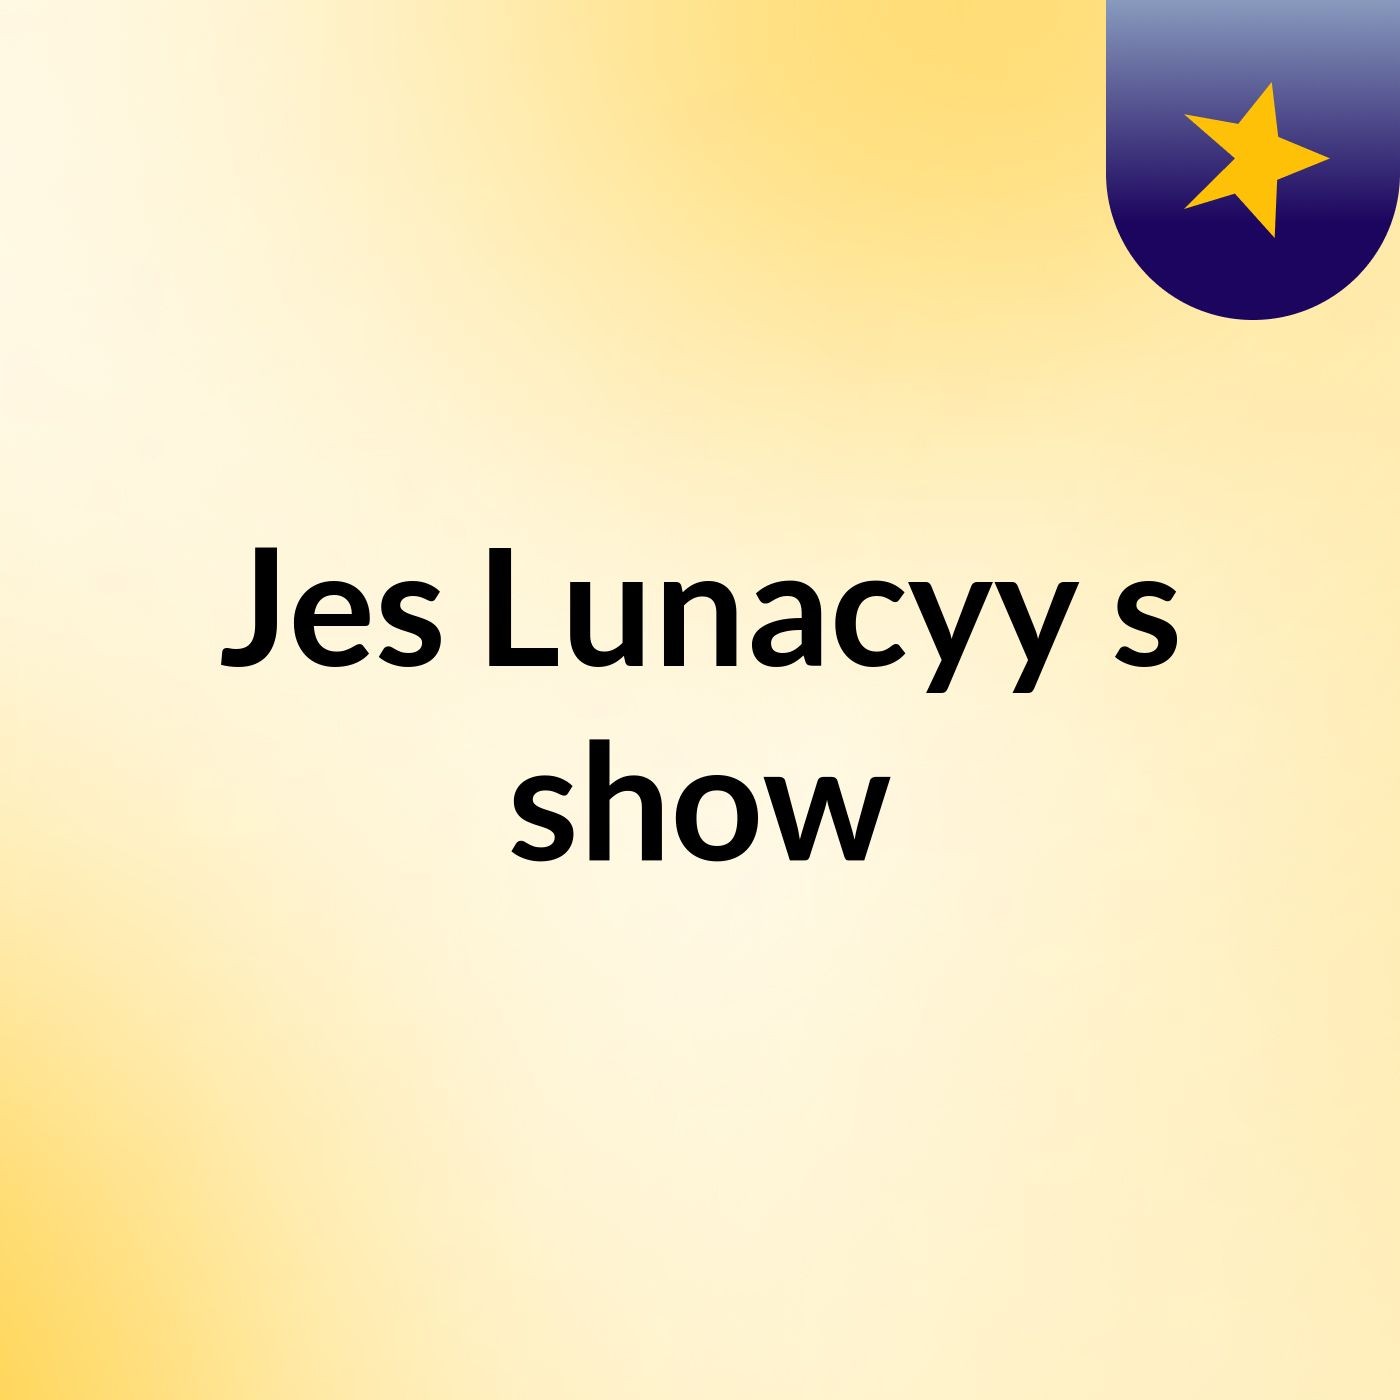 Jes Lunacyy's show